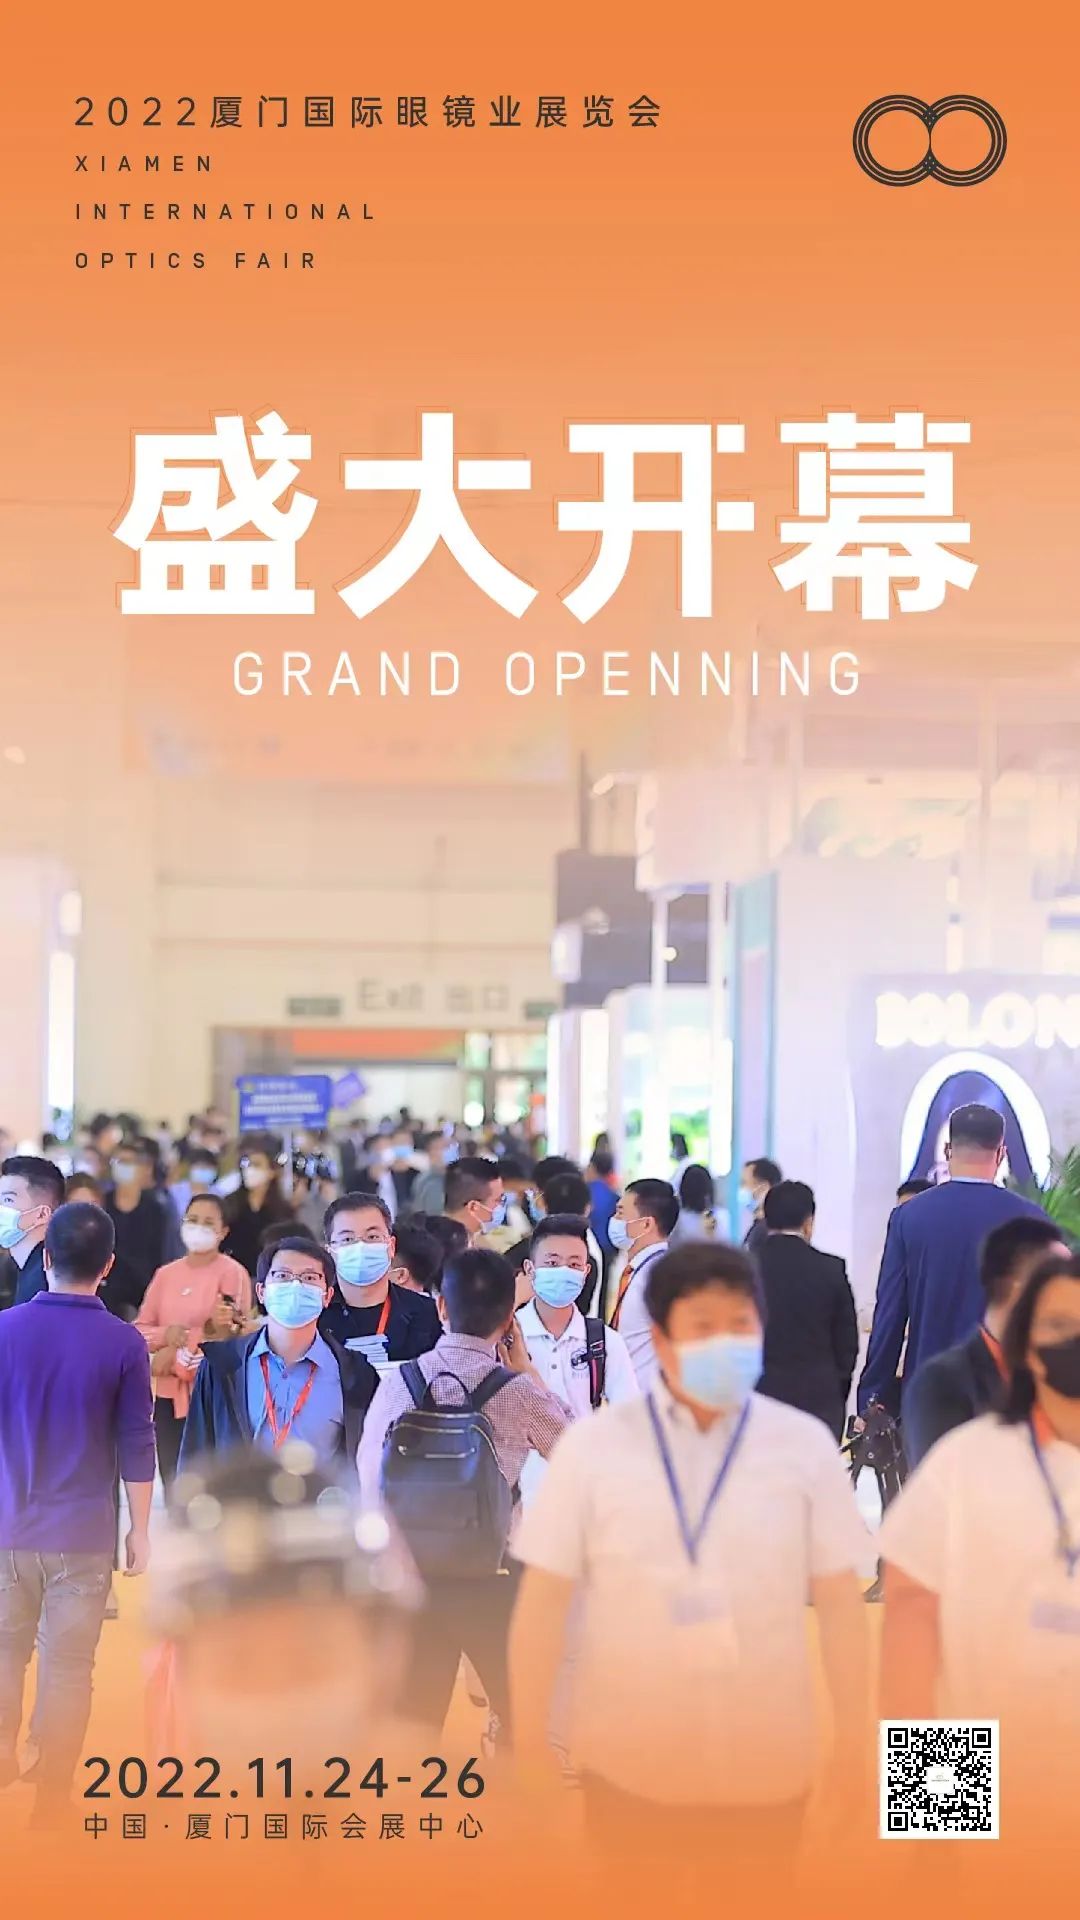 Pameran Optik Internasional Xiamen 2022 dibuka hari ini!